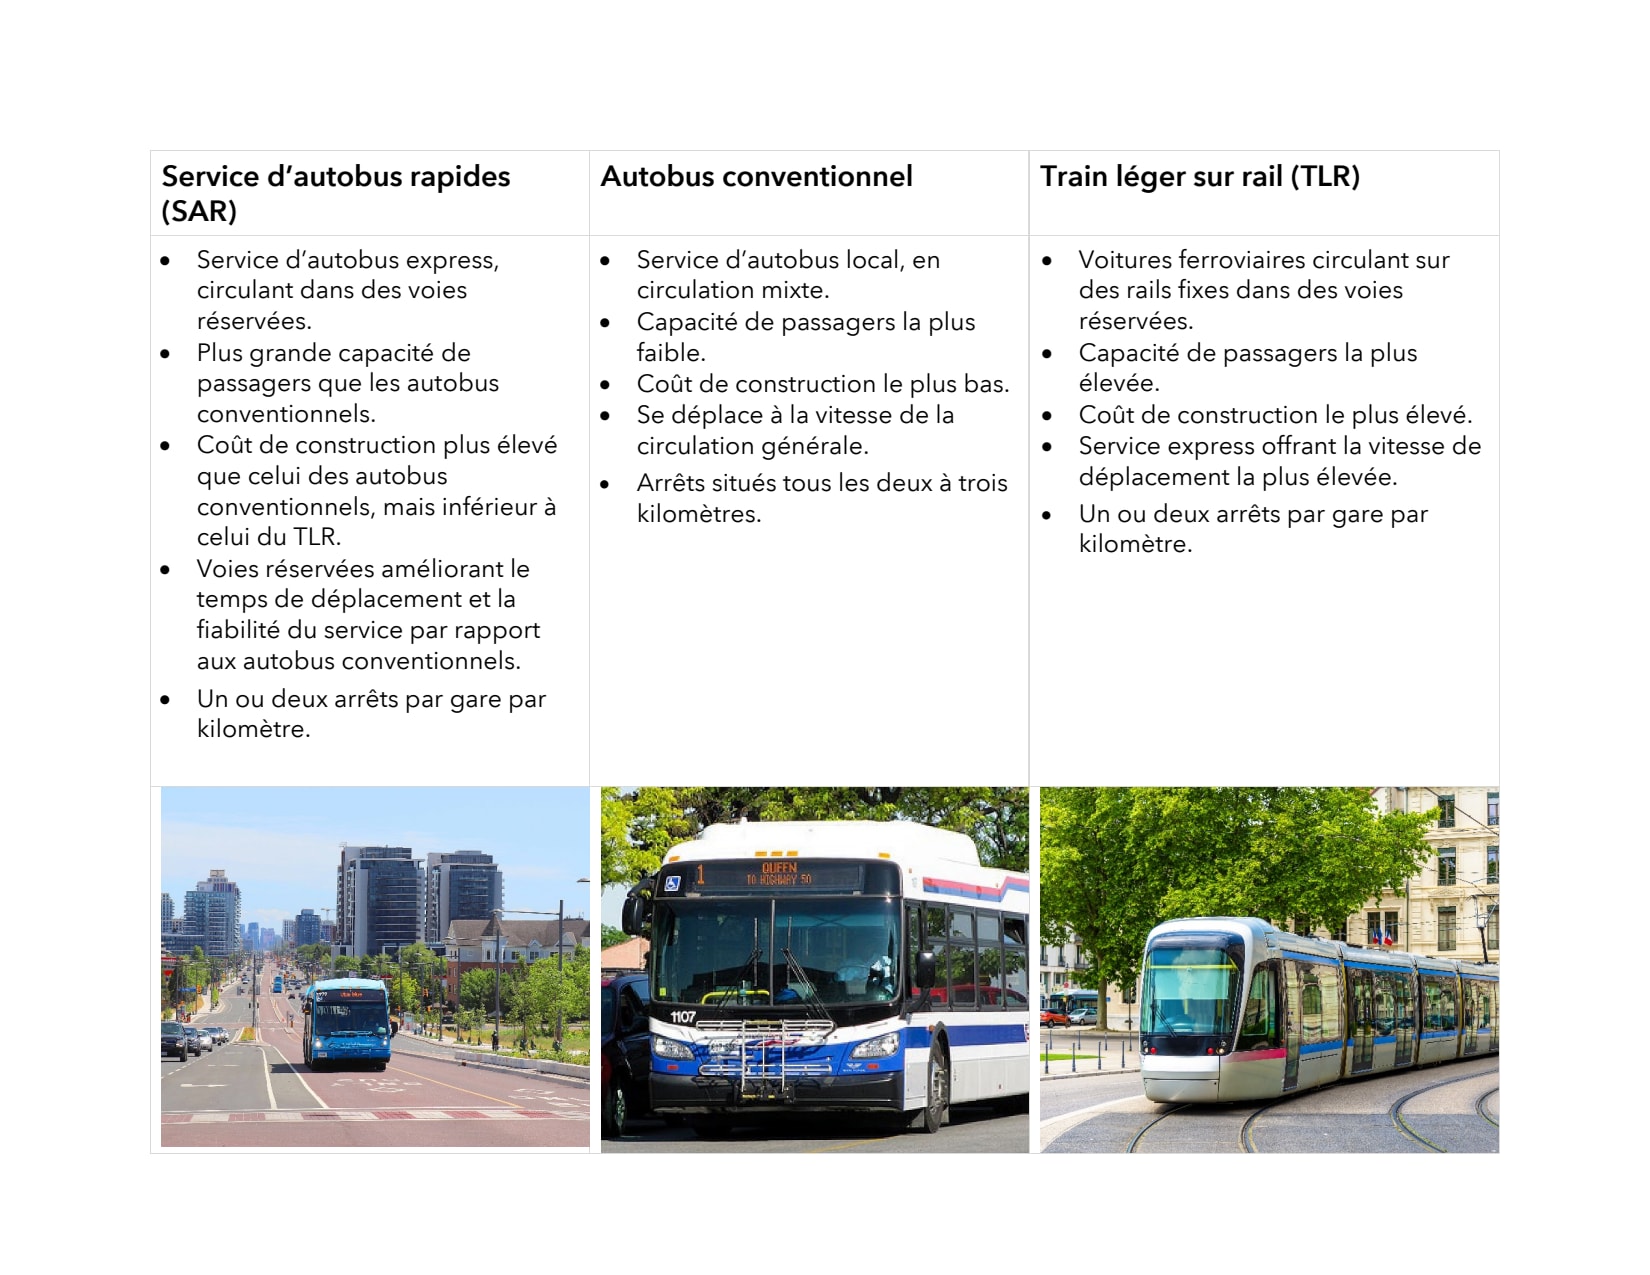 Comparaison du réseau de transport en commun de surface